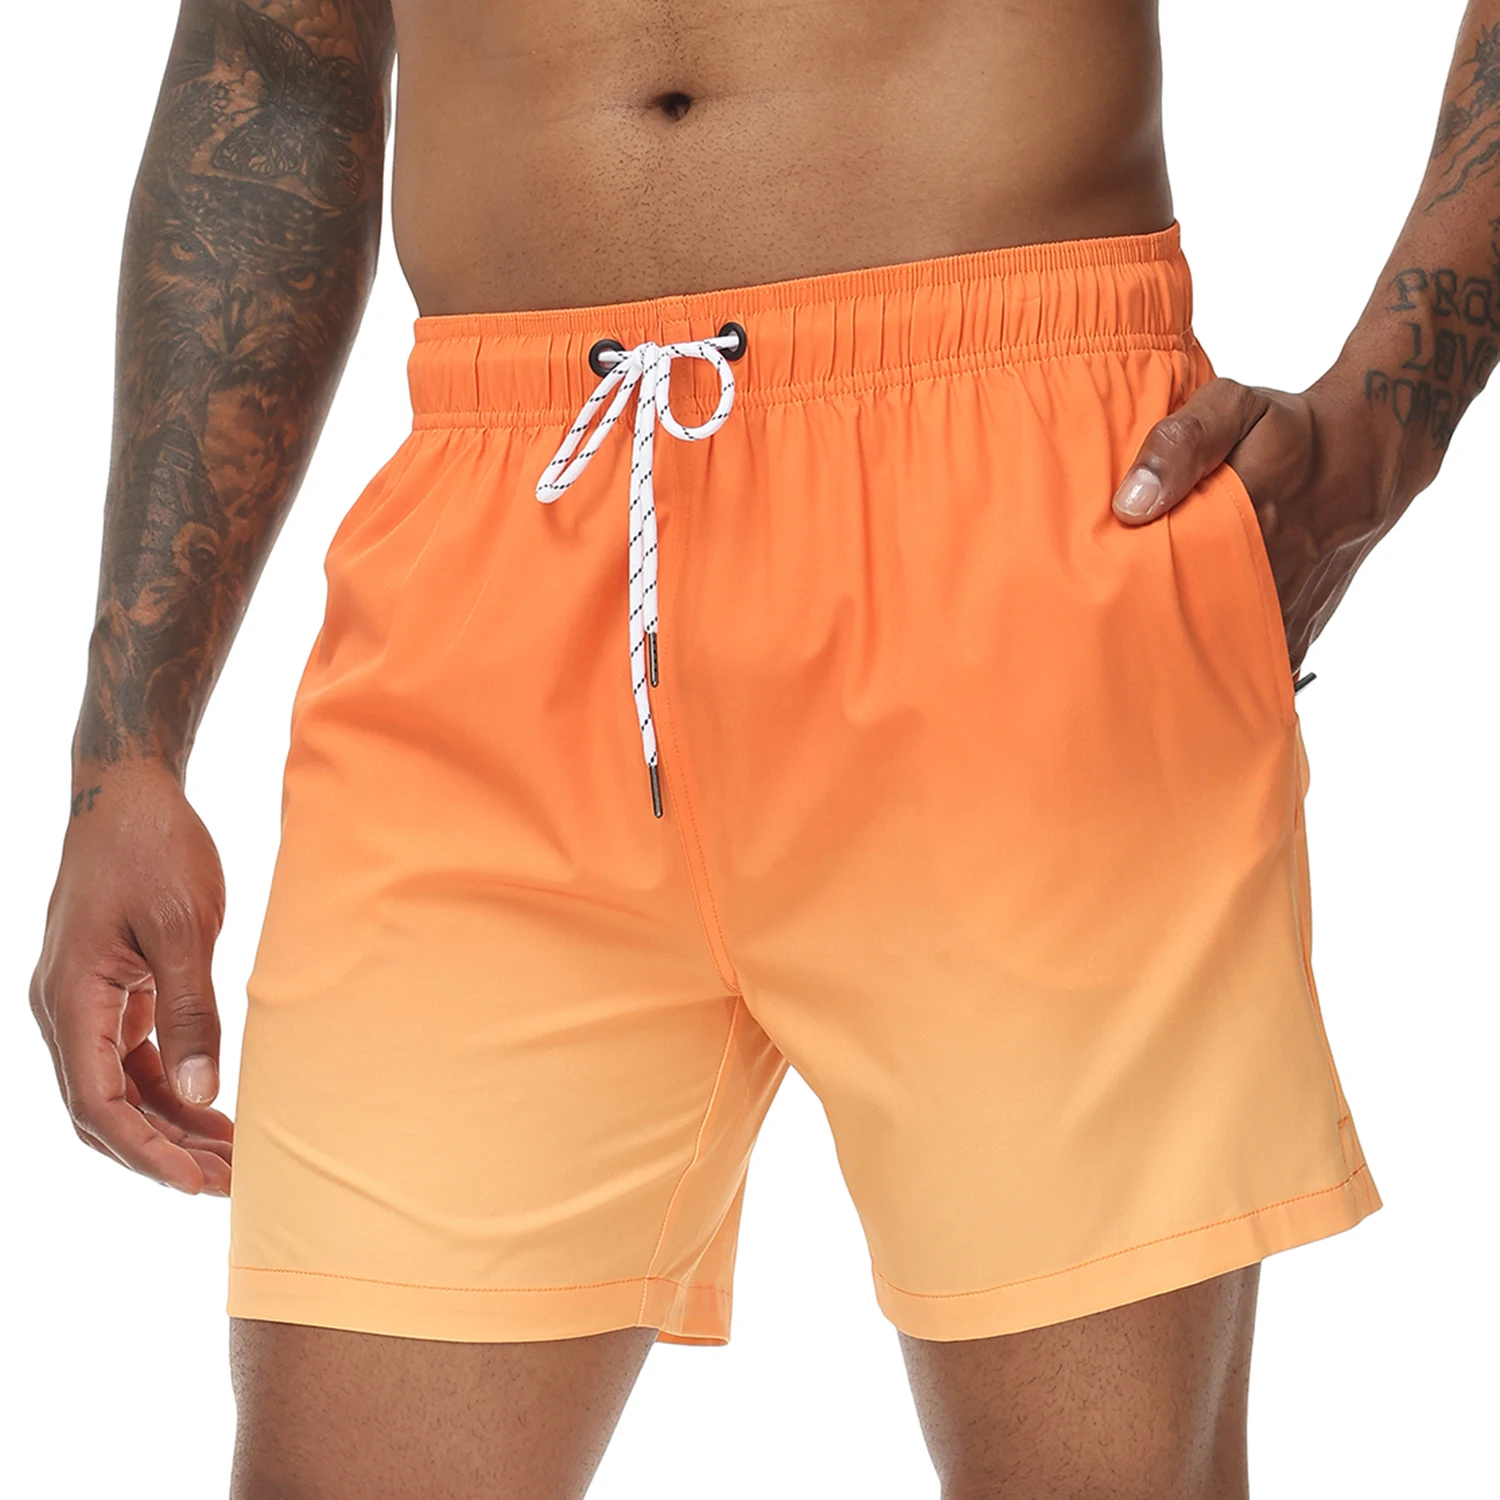 גברים החוף של מכנסיים קצרים בגד ים צבע שרוך אלסטי עם מותניים יבש מהירה ג ' וגינג תרגיל לרוץ במכנסיים קצרים. - 0